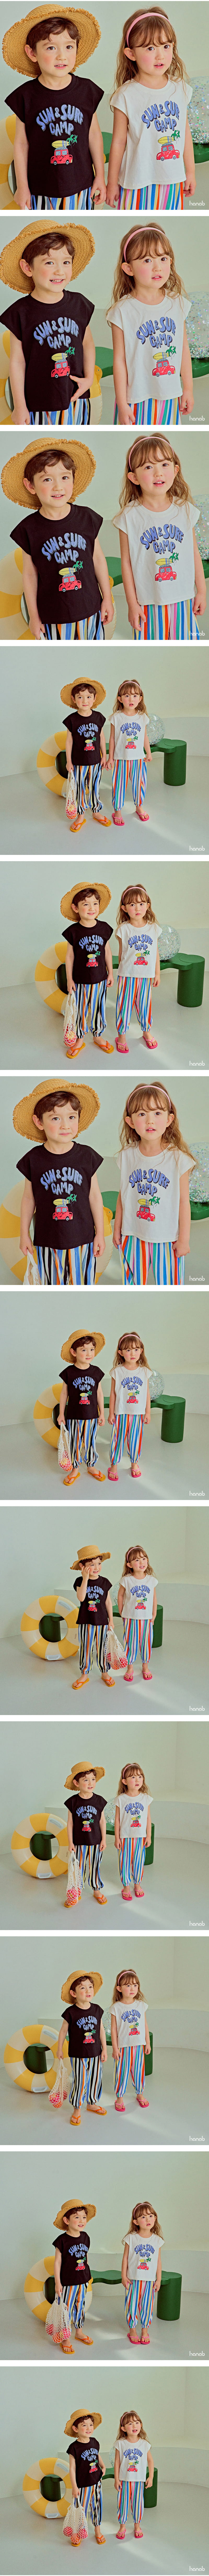 Hanab - Korean Children Fashion - #kidsshorts - Sun Camp Sleeveless - 2